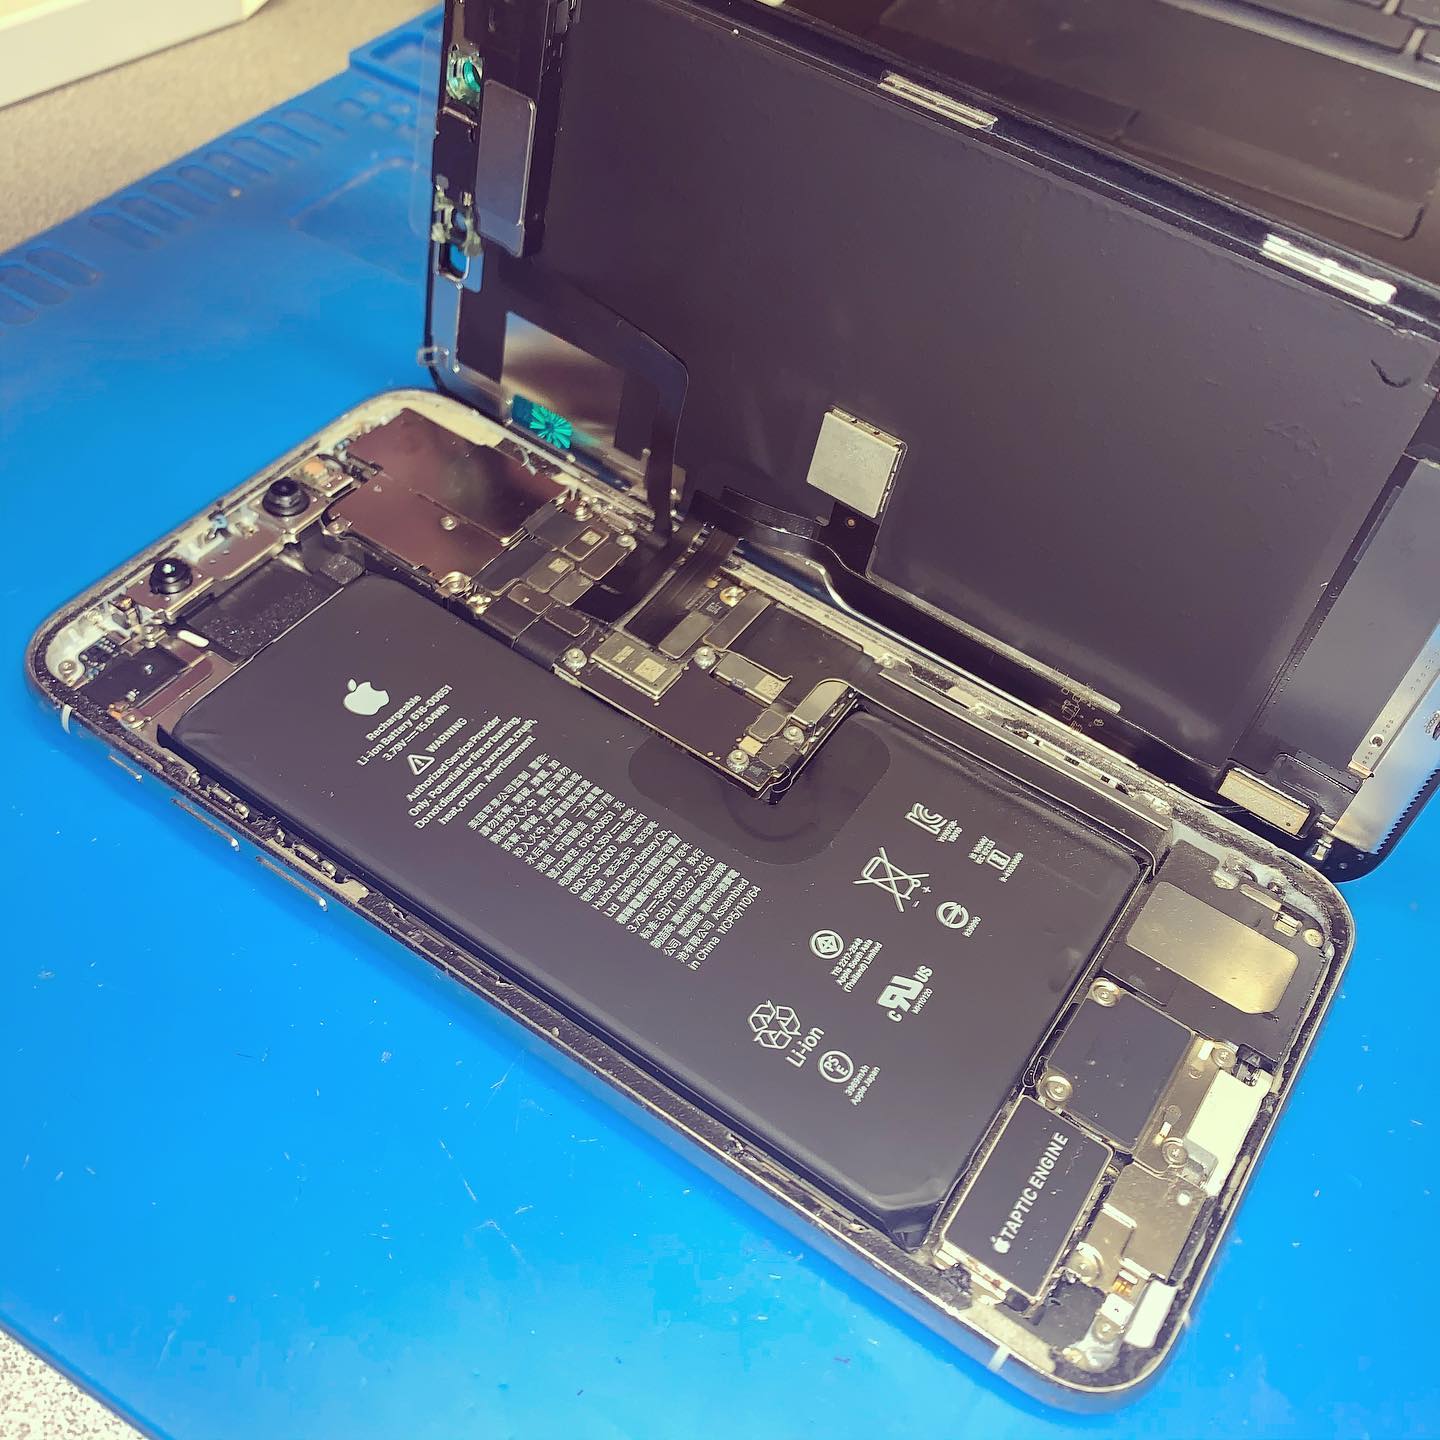 The Phone Shop - iPhone Repair - Screen repair